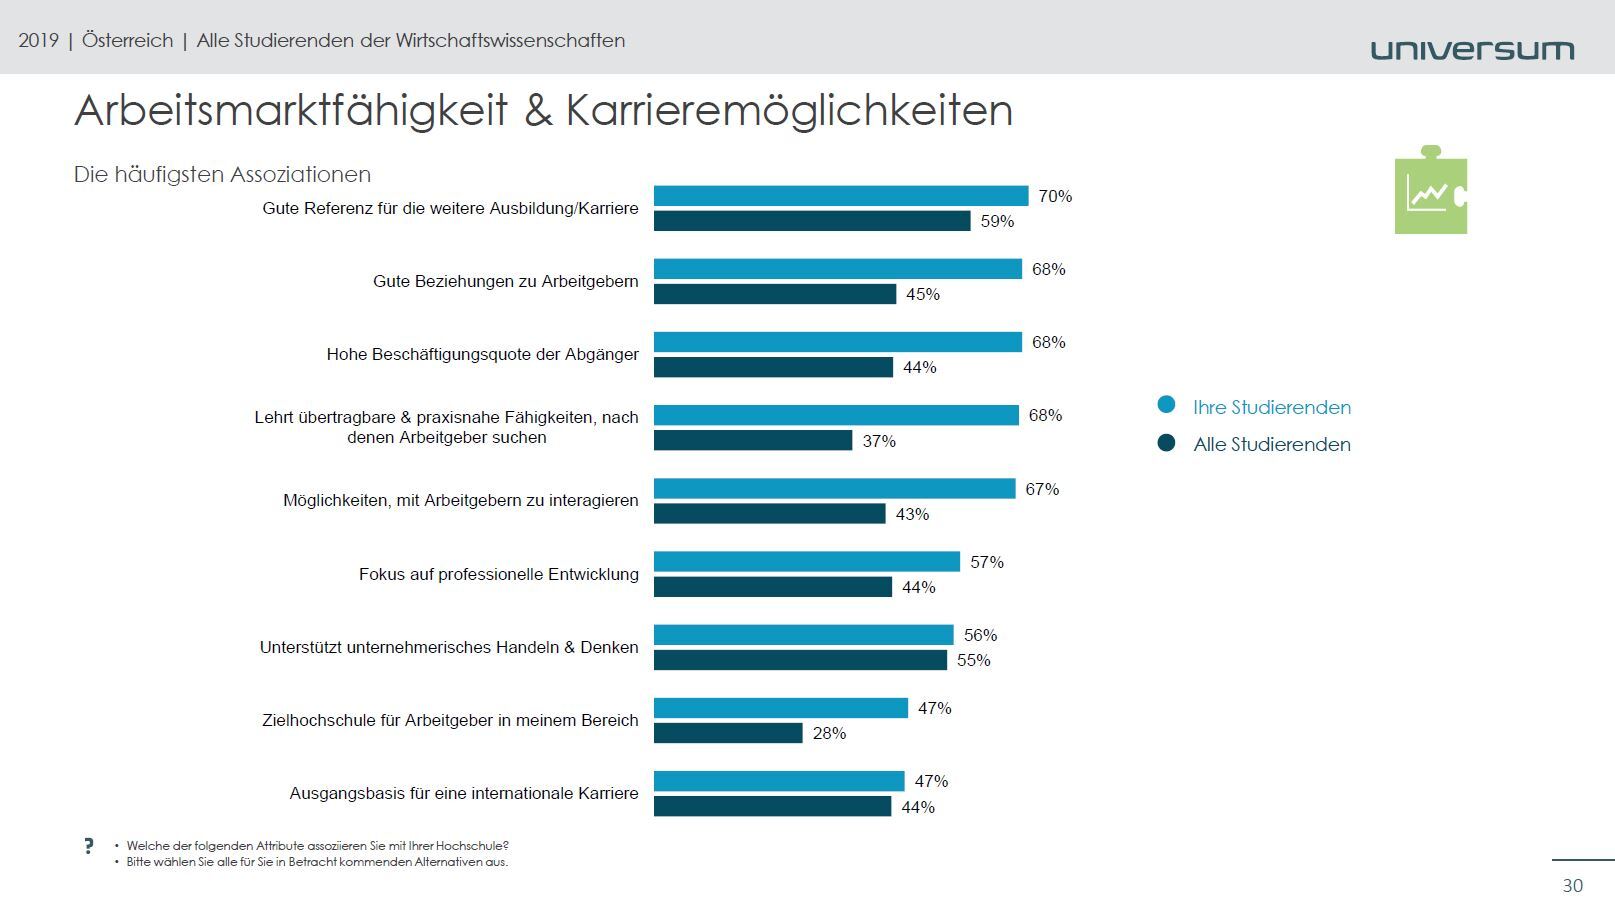 Ein direkter Vergleich mehrere Kategorien unter Arbeitsmarktfähigkeit & Karrieremöglichkeiten zwischen den Studierenden an der FH Steyr und allen anderen in Österreich